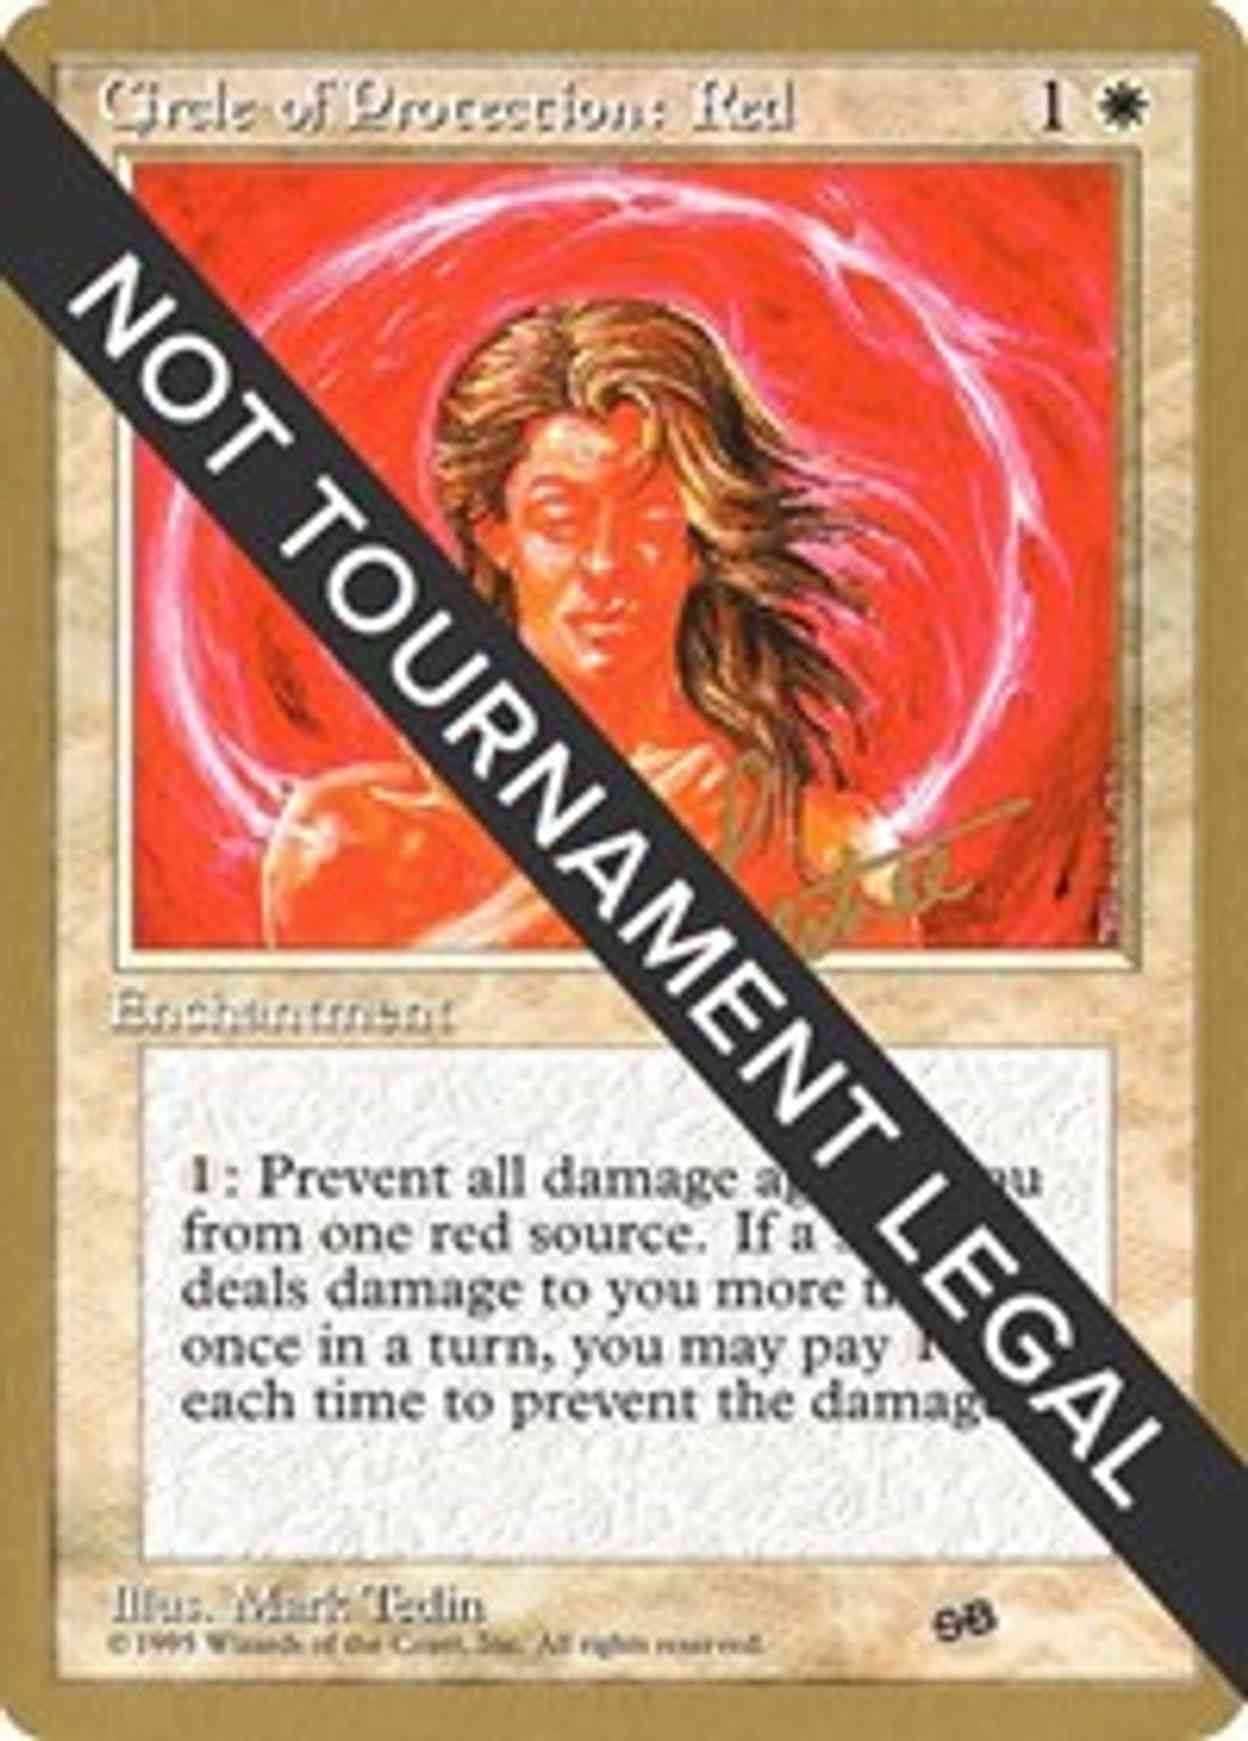 Circle of Protection: Red - 1996 Bertrand Lestree (4ED) (SB) magic card front